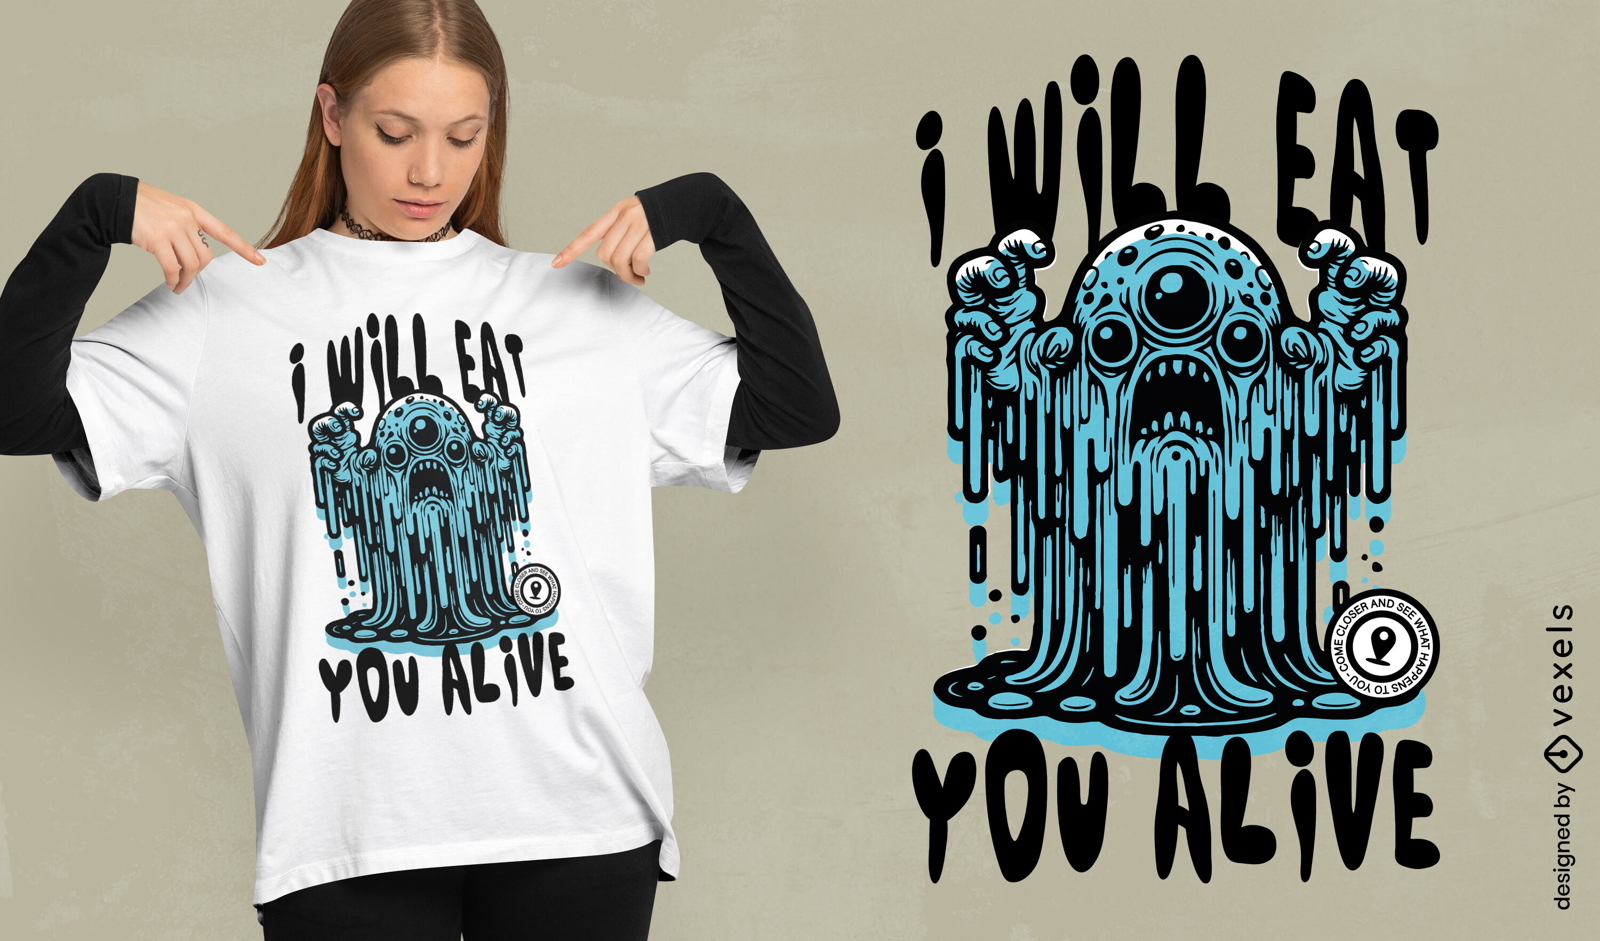 Creepy menacing monster t-shirt design